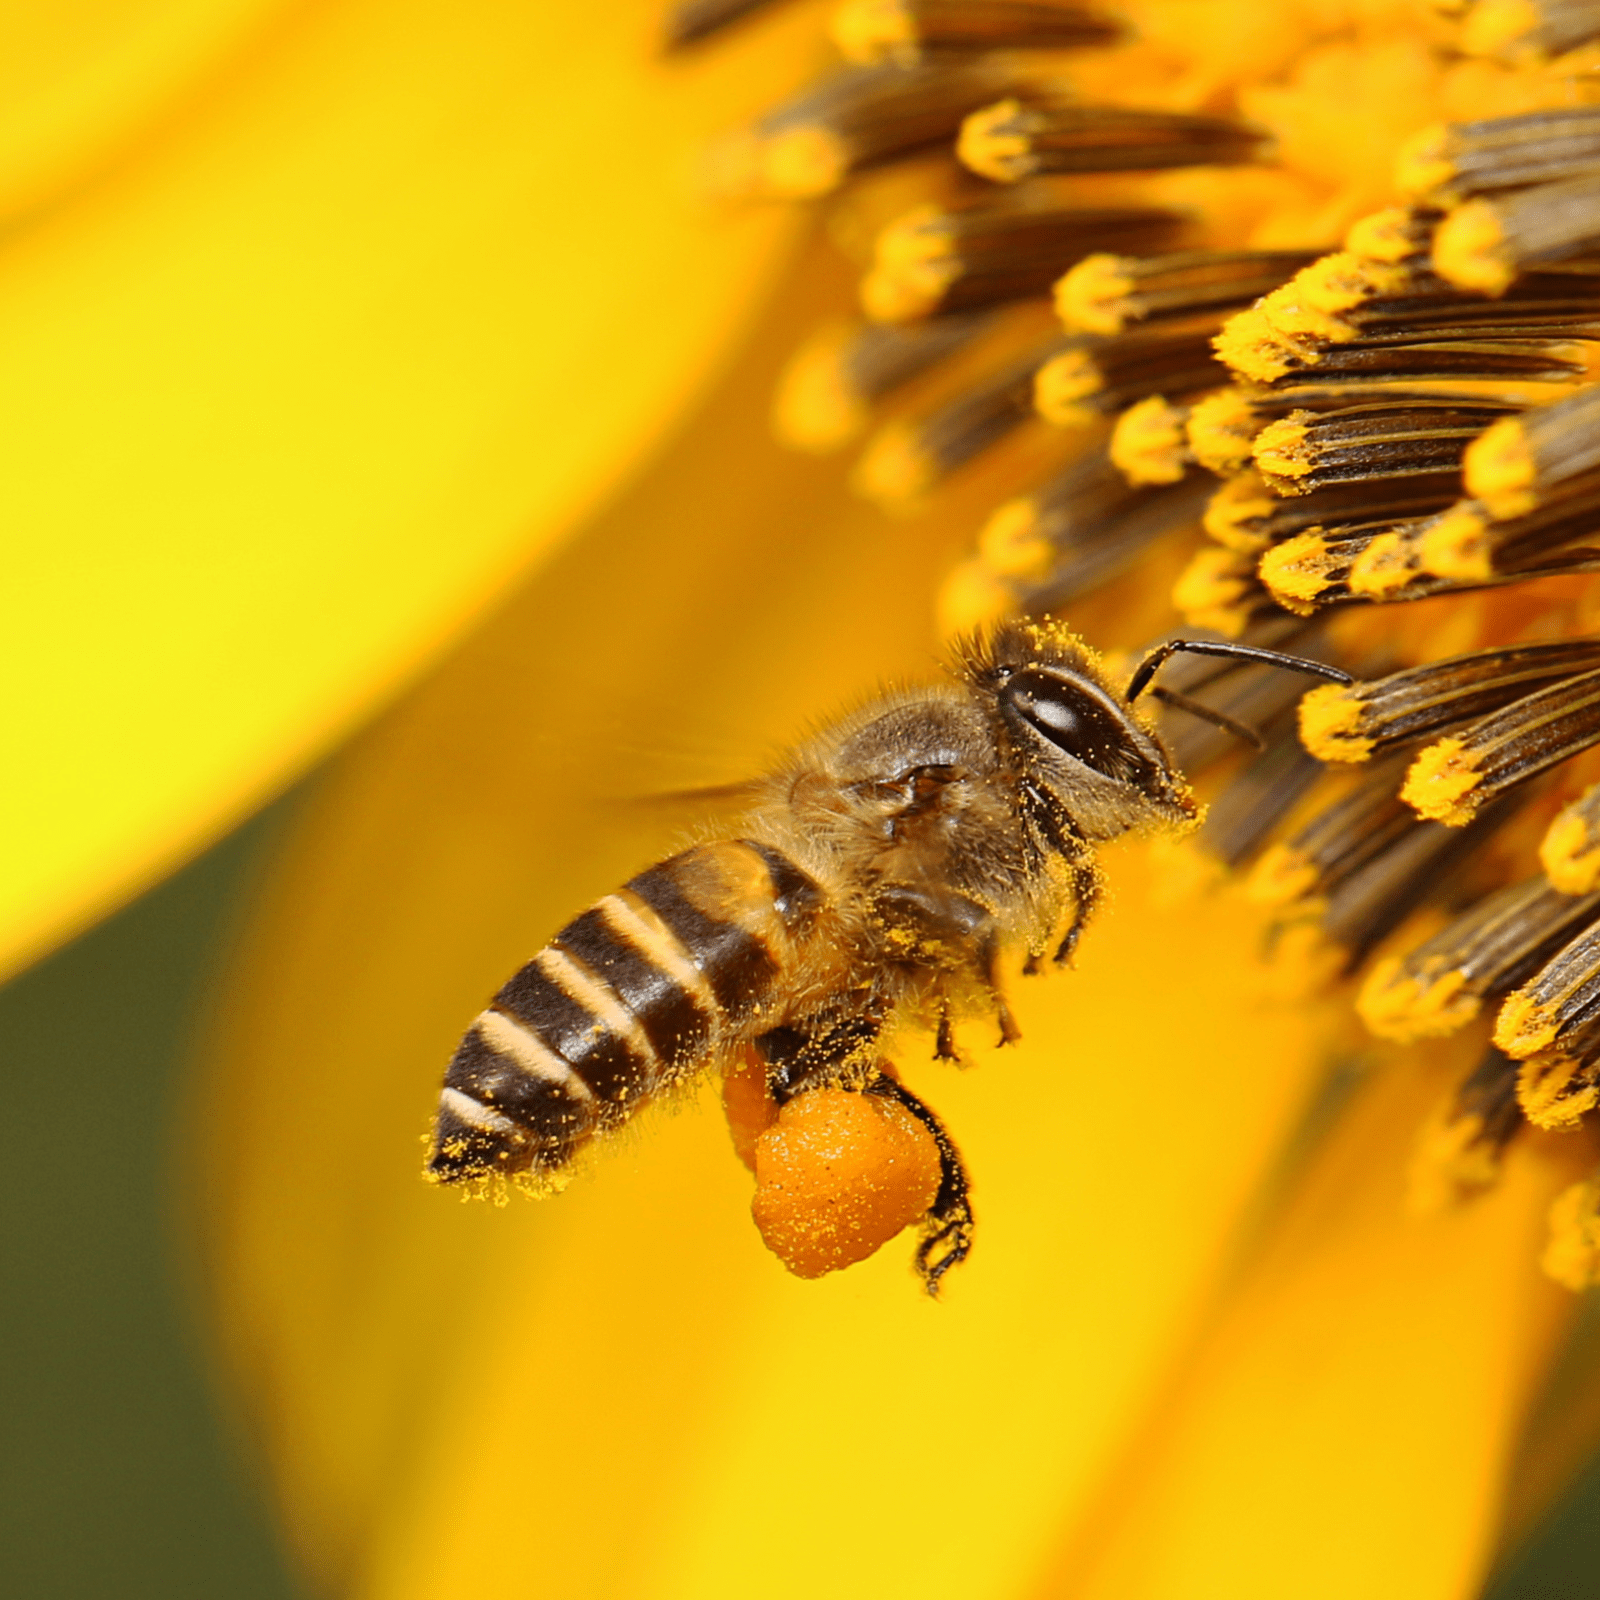 Polen natural de abeja directo de apicultores leoneses